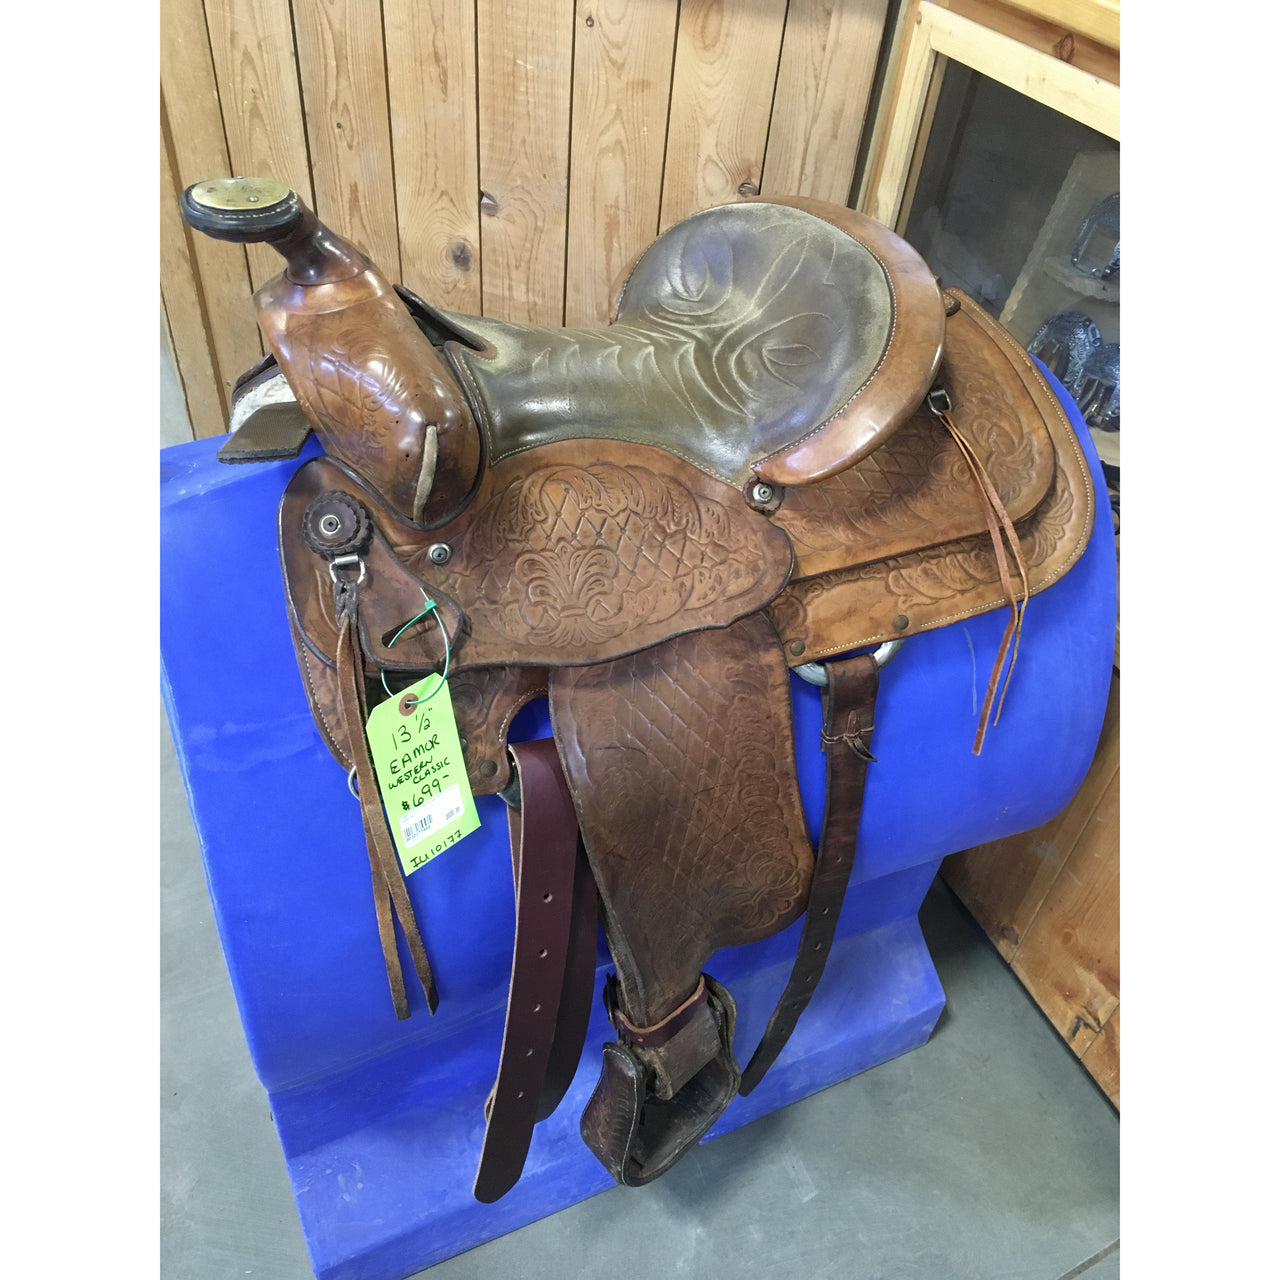 Used 13.5" Emore Western Classic Saddle